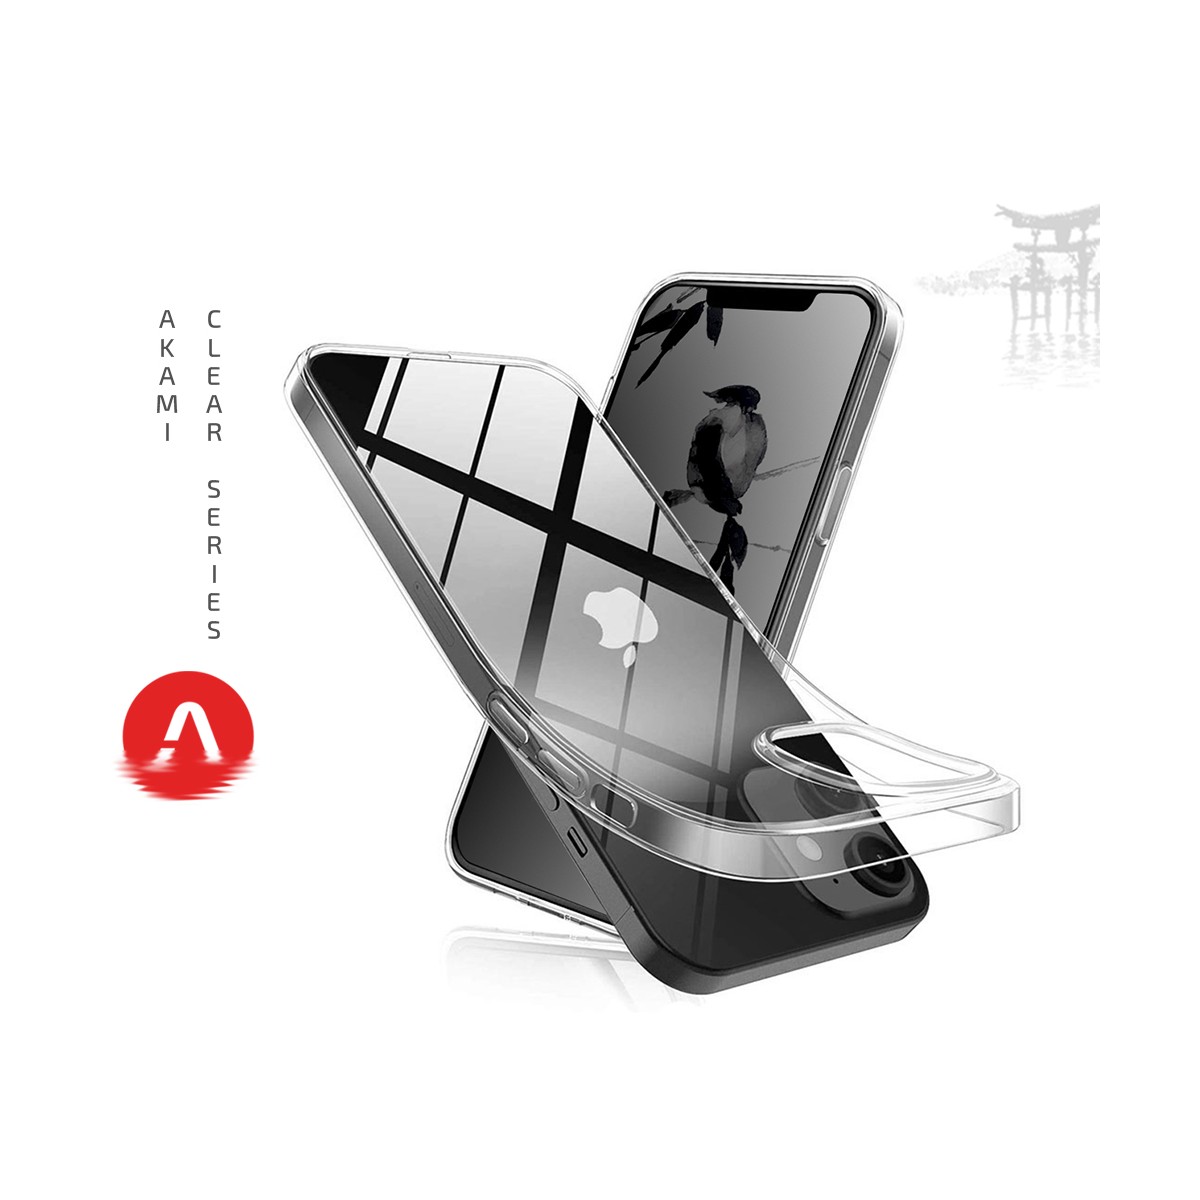 Coque Akami pour iPhone 12 en silicone de haute qualité transparent